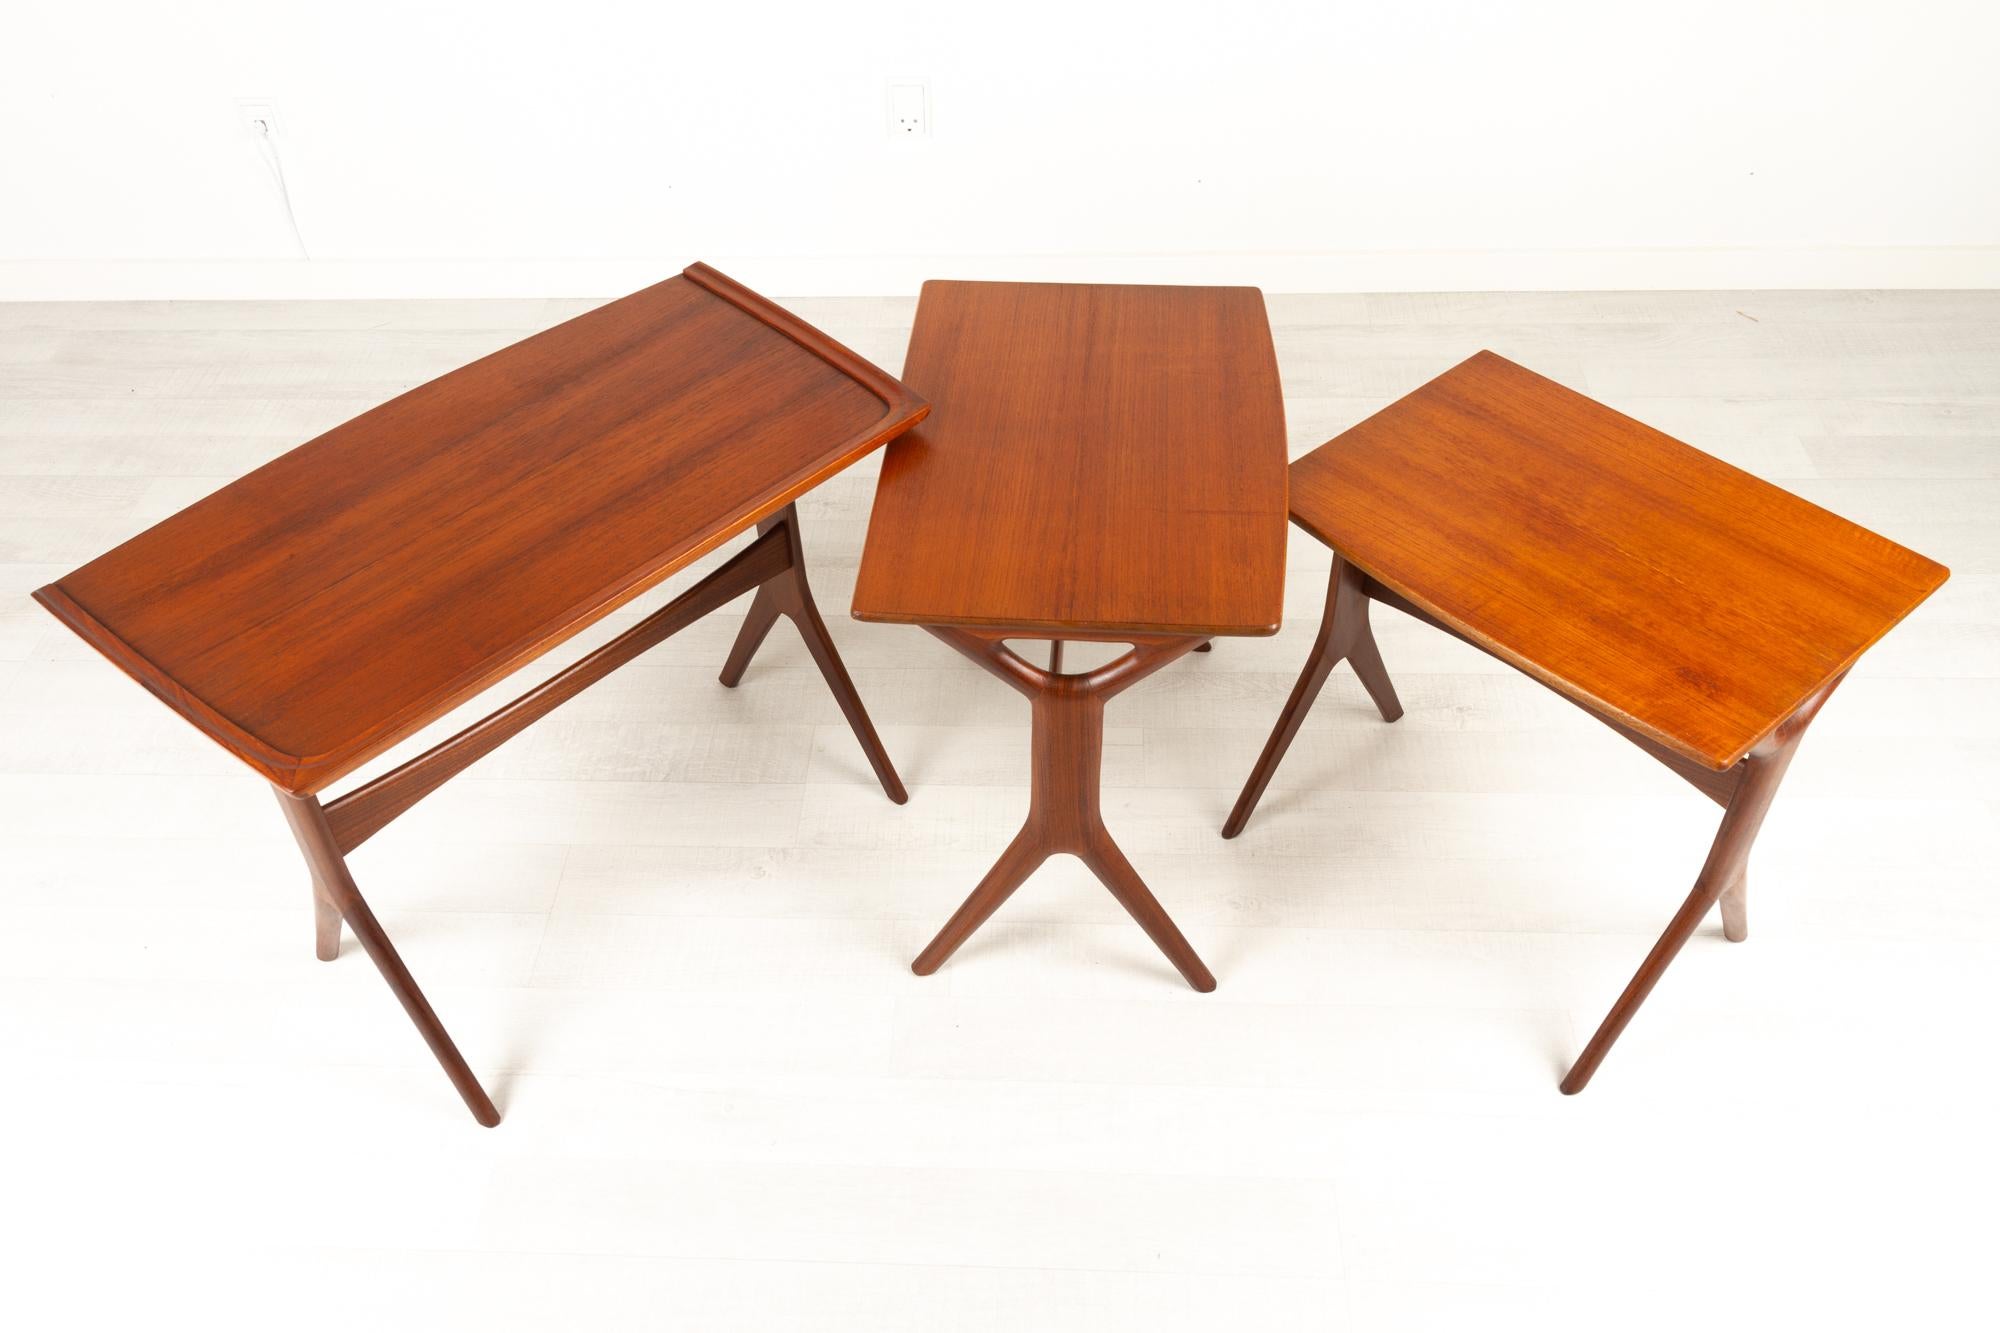 Danish Modern Teak Nesting Tables by Johannes Andersen for CFC, 1960s For Sale 10